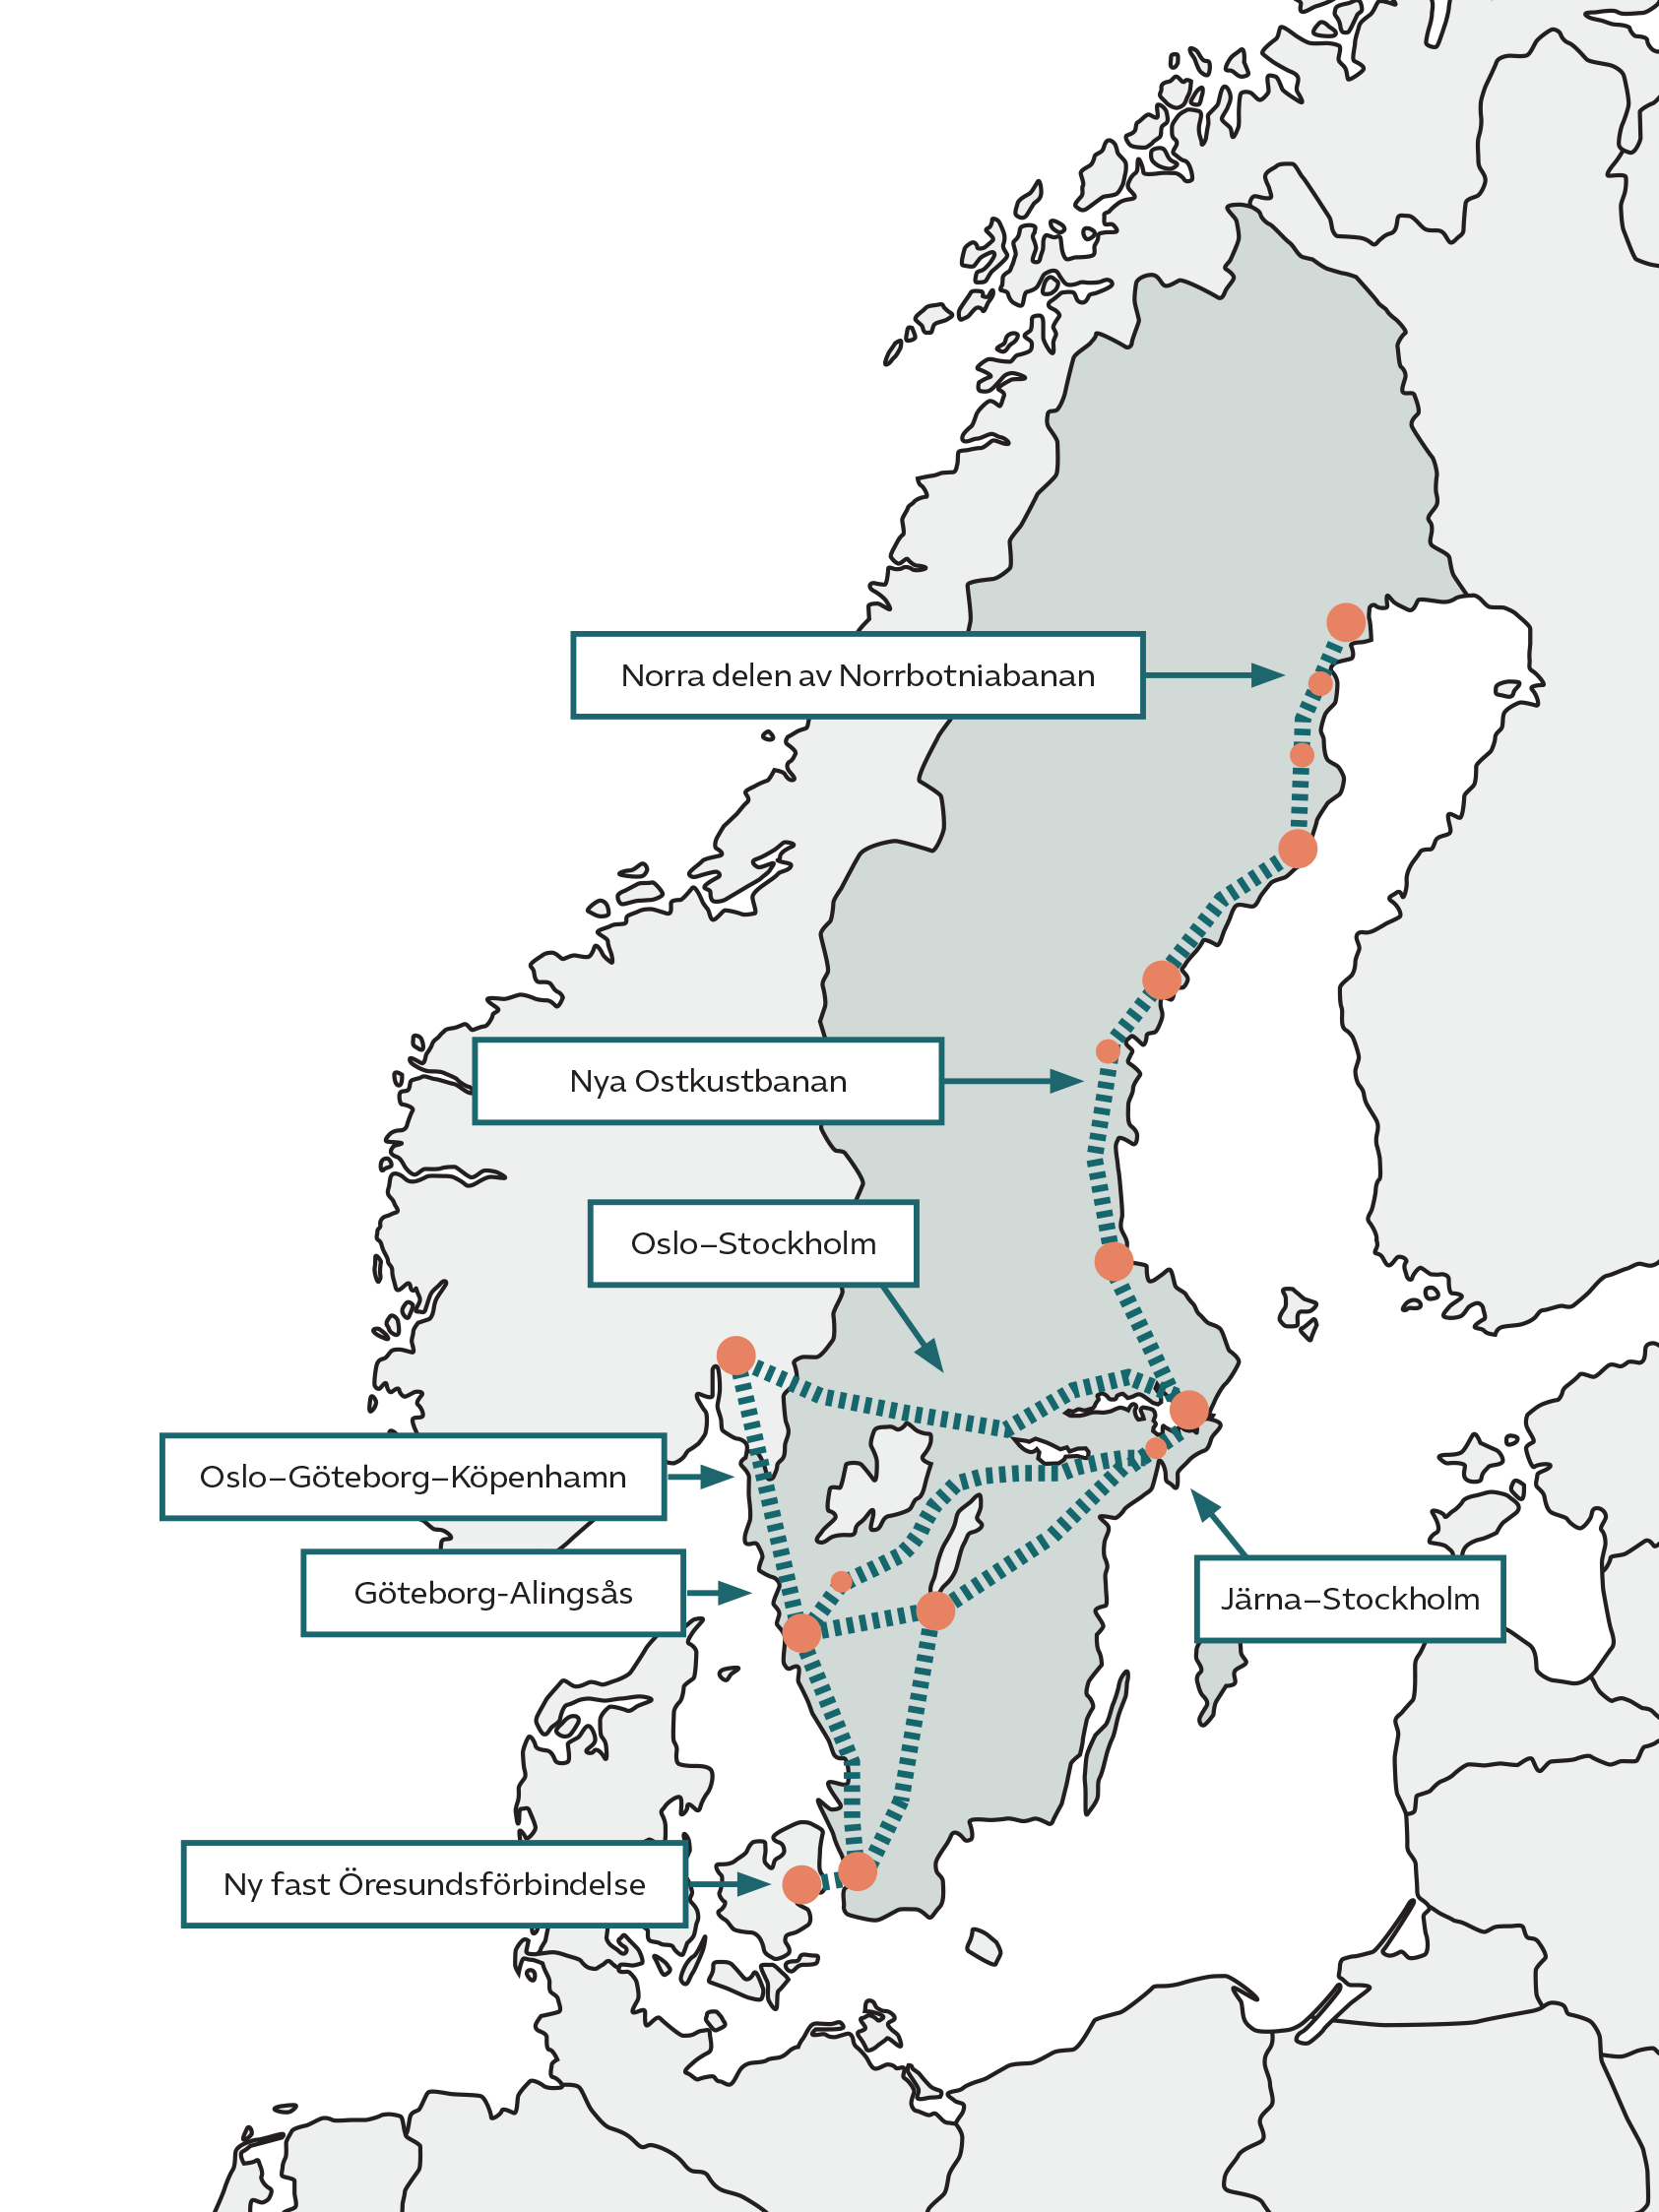 Sverigekarta med nya järnvägssträckningar utmarkerade